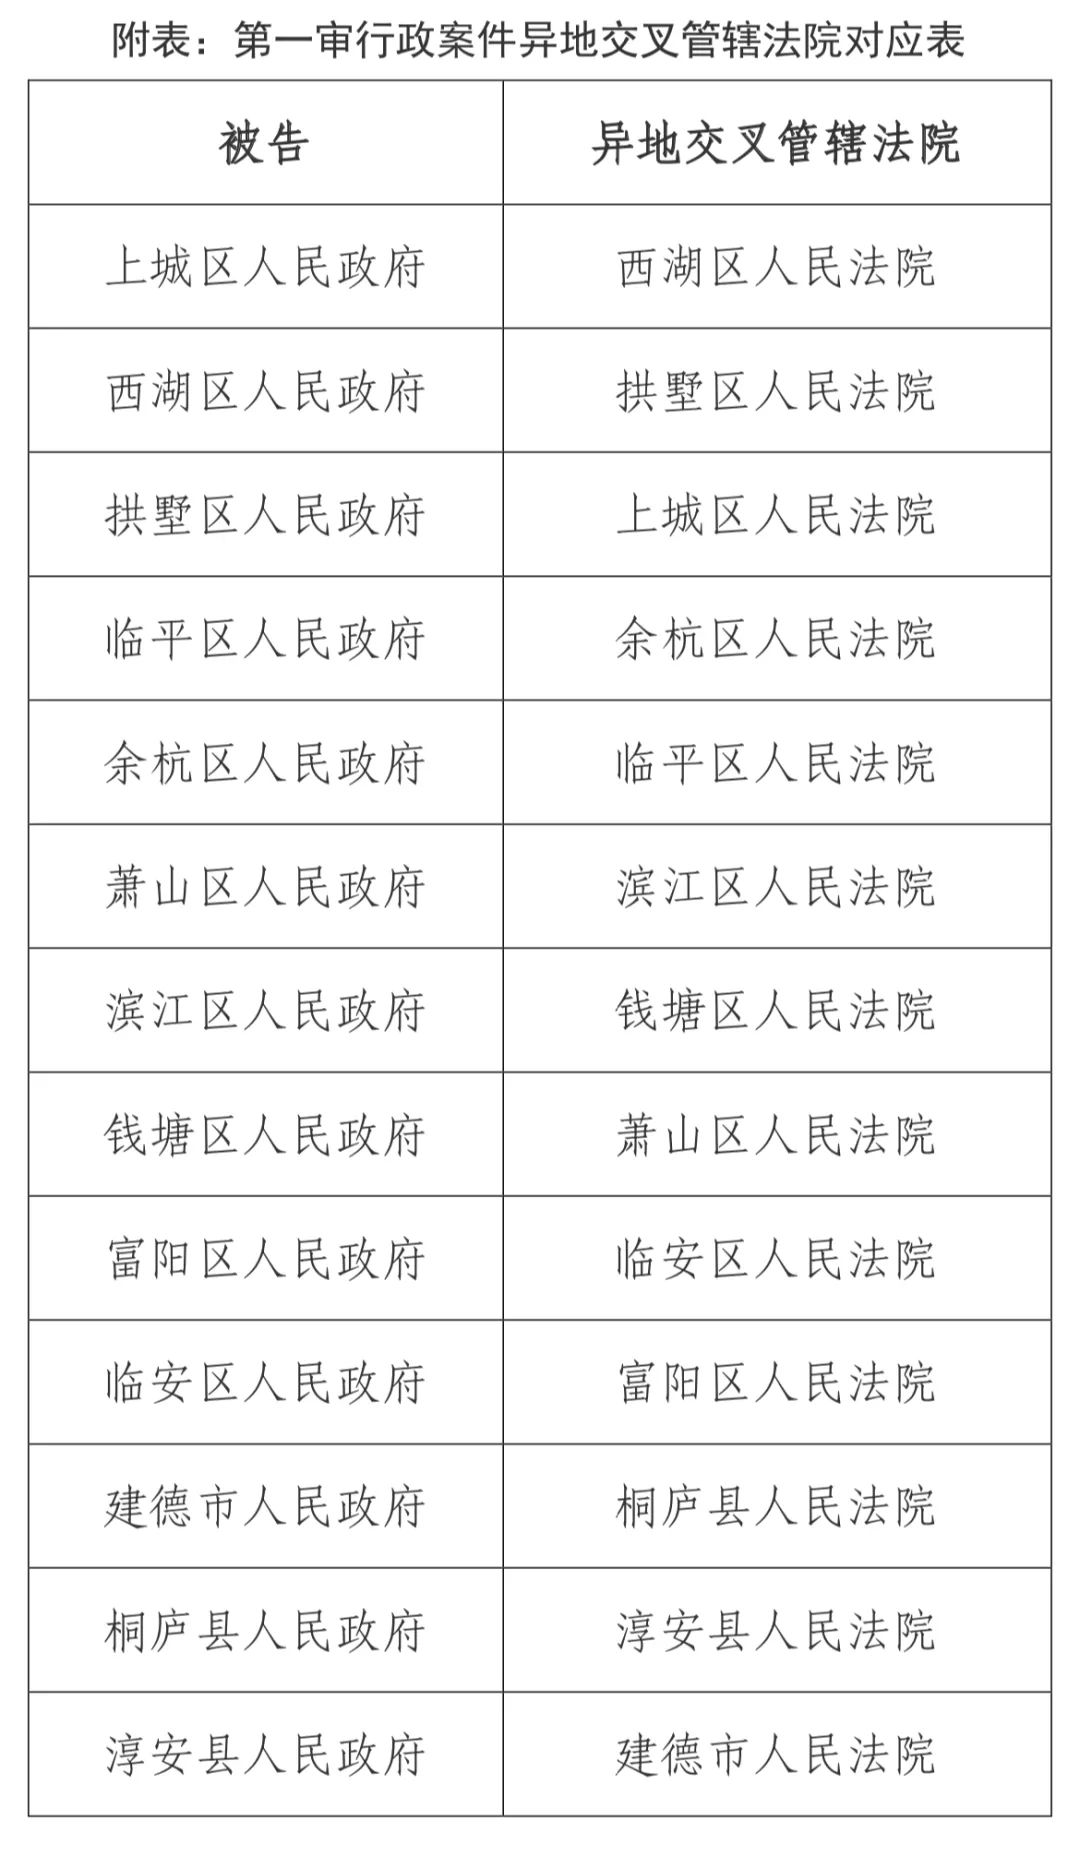 关于调整杭州市基层法院部分一审行政案件异地交叉管辖方案的公告